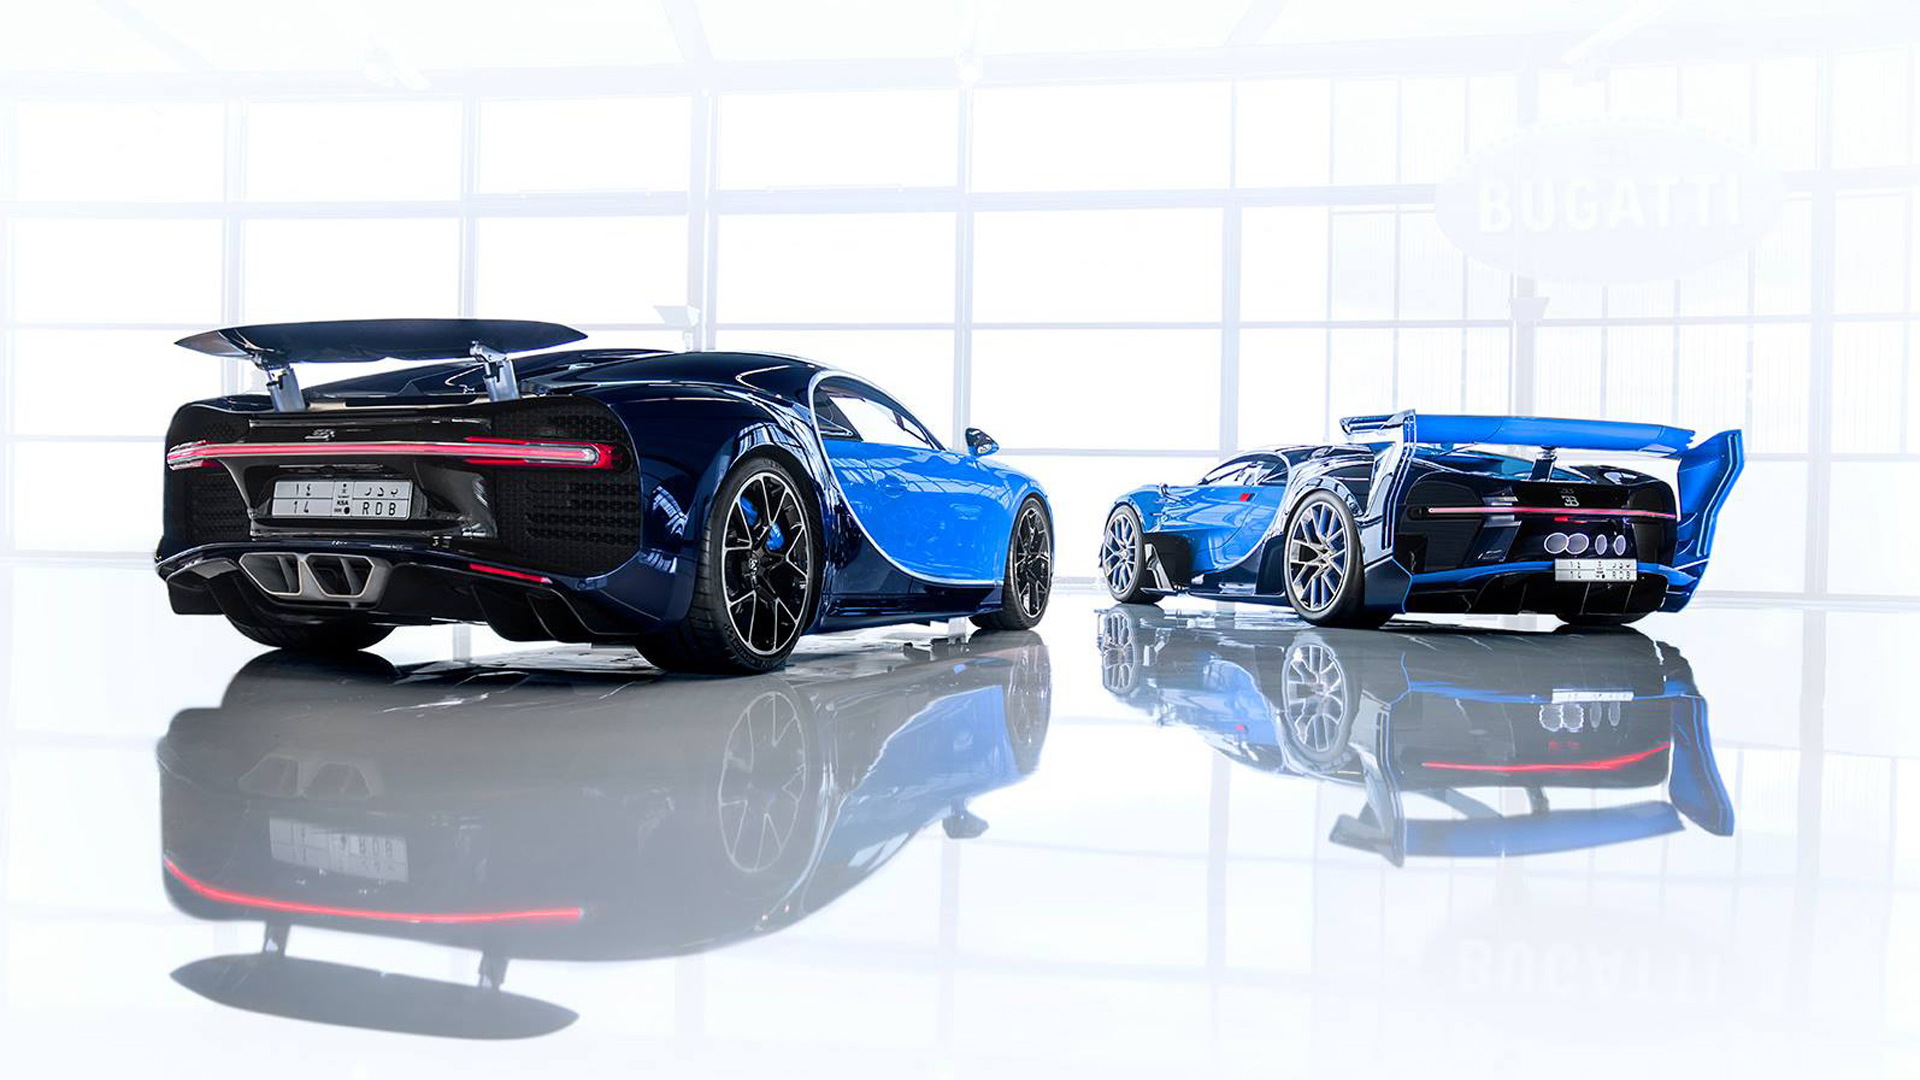 Bugatti Chiron and Vision Gran Turismo concept